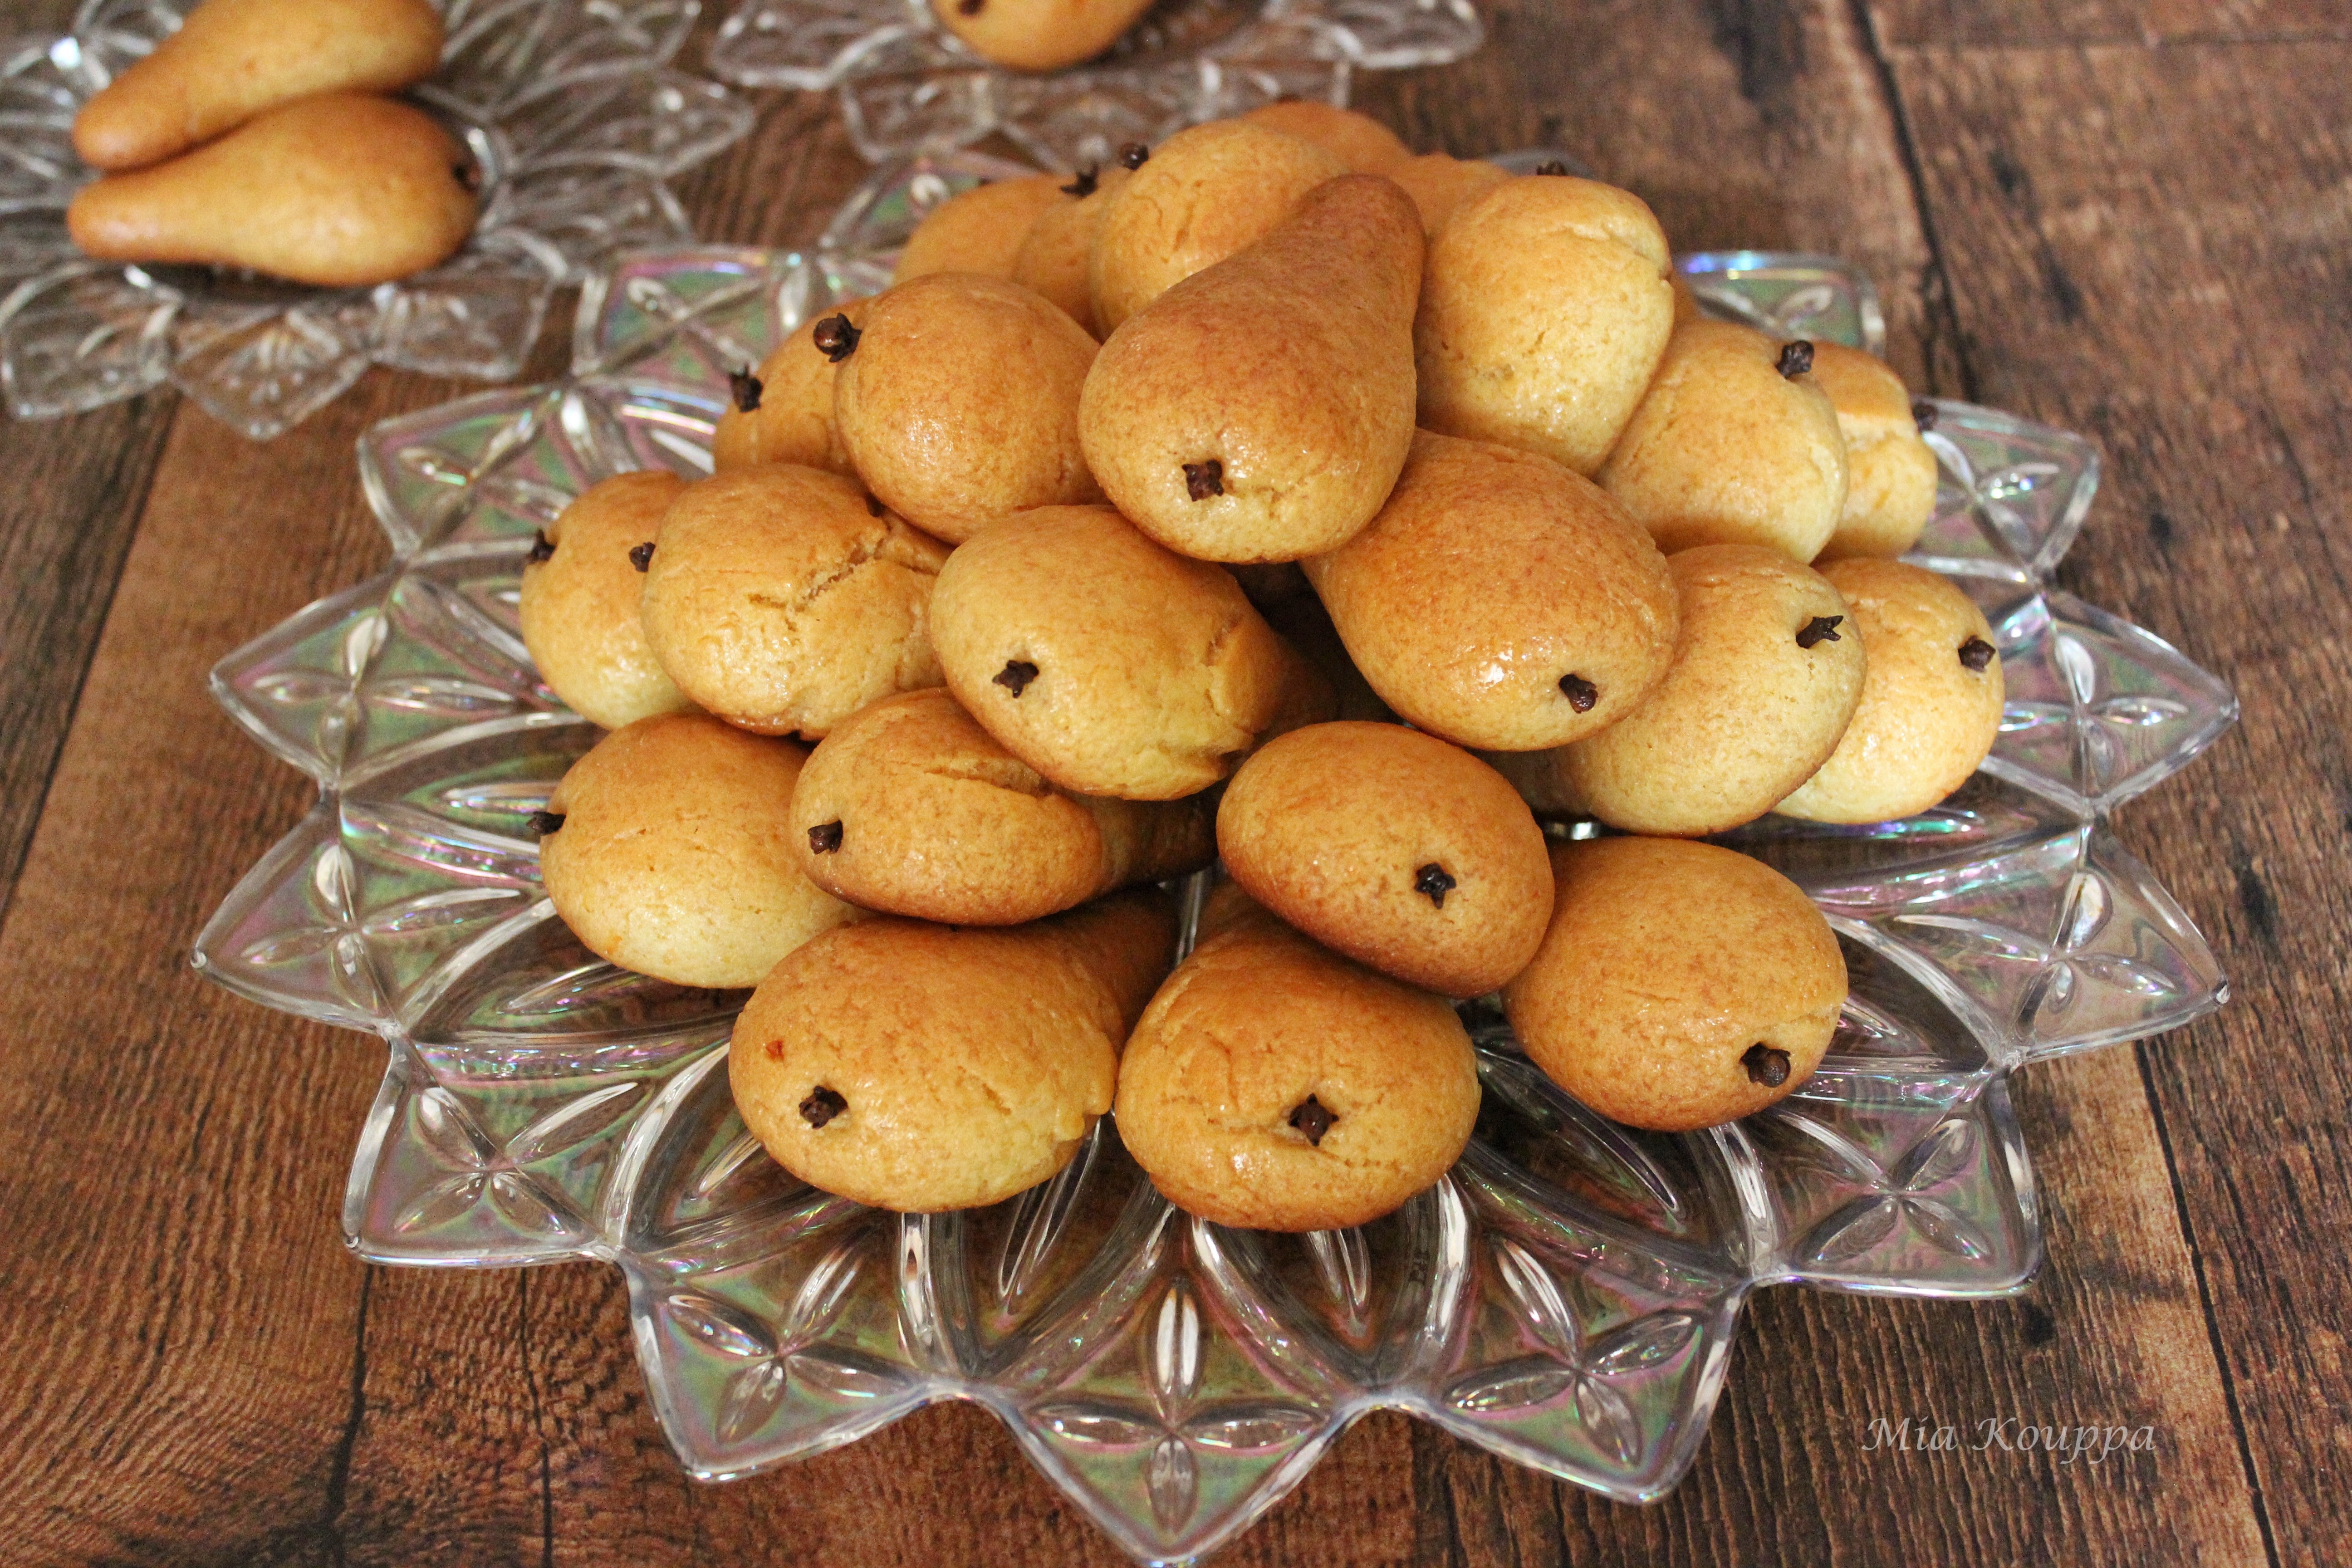 Pear-shaped cookies (Αχλαδάκια)